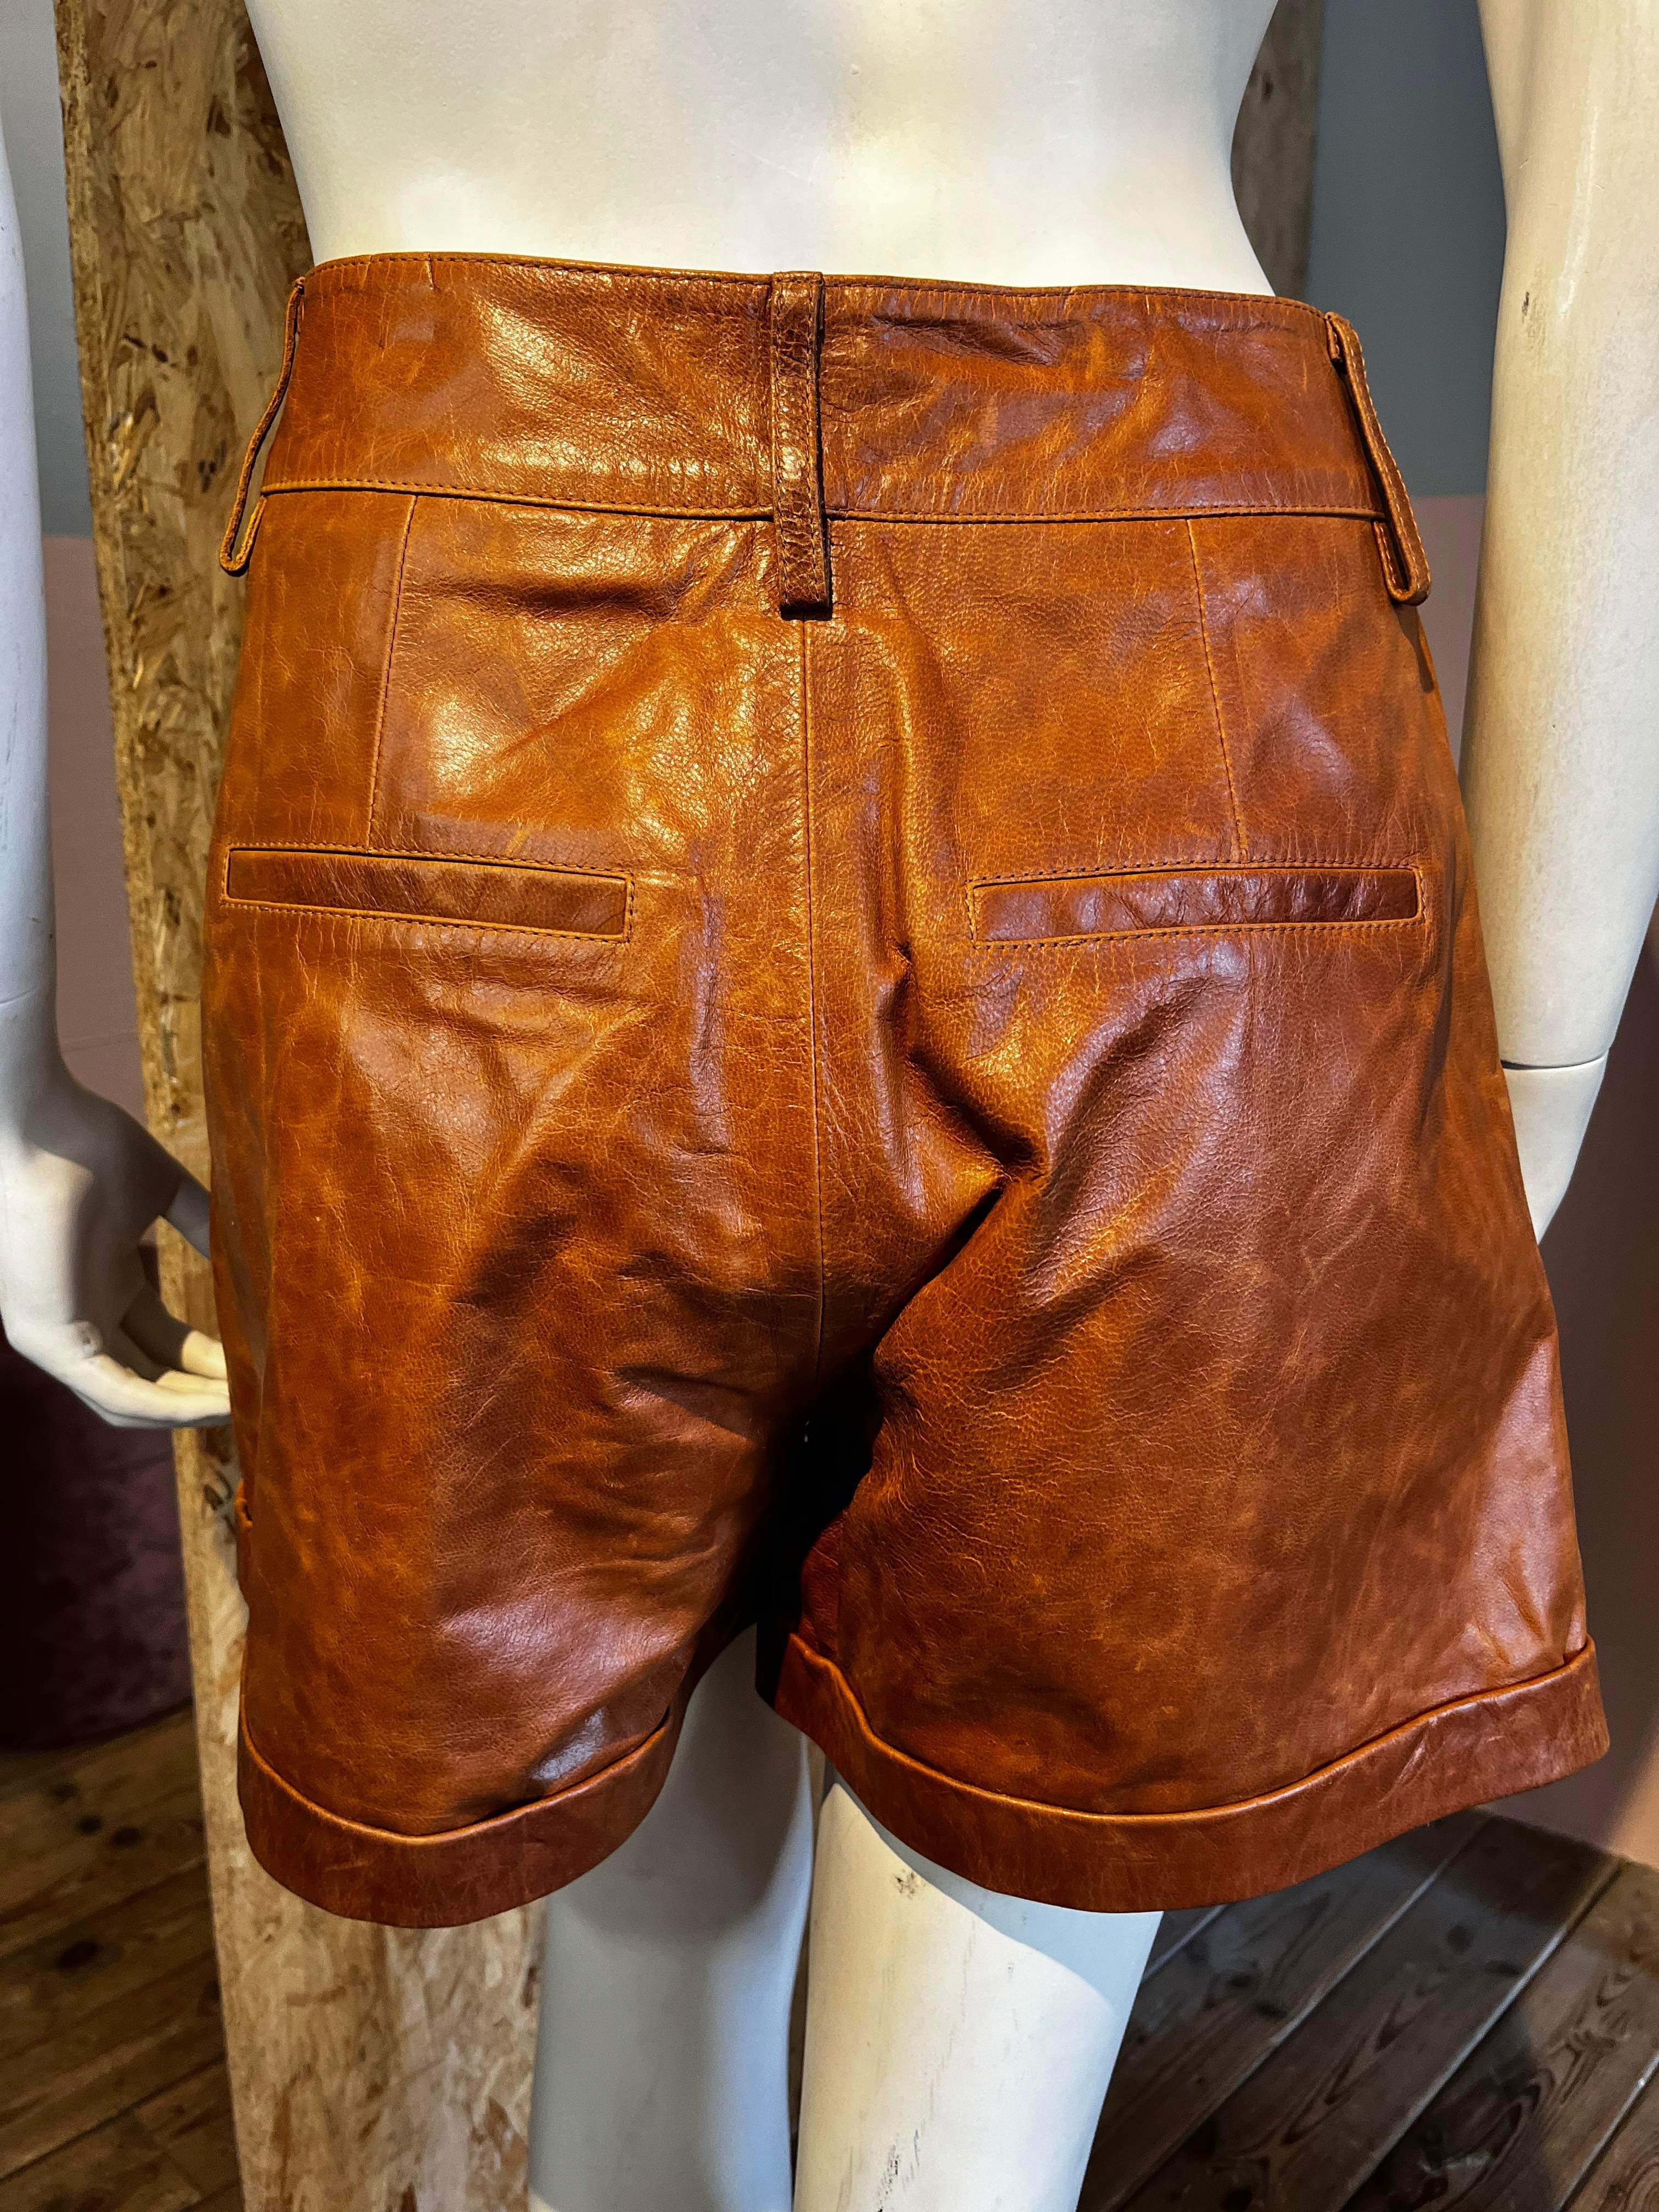 Remain Birger Christensen - Shorts - Size: 36